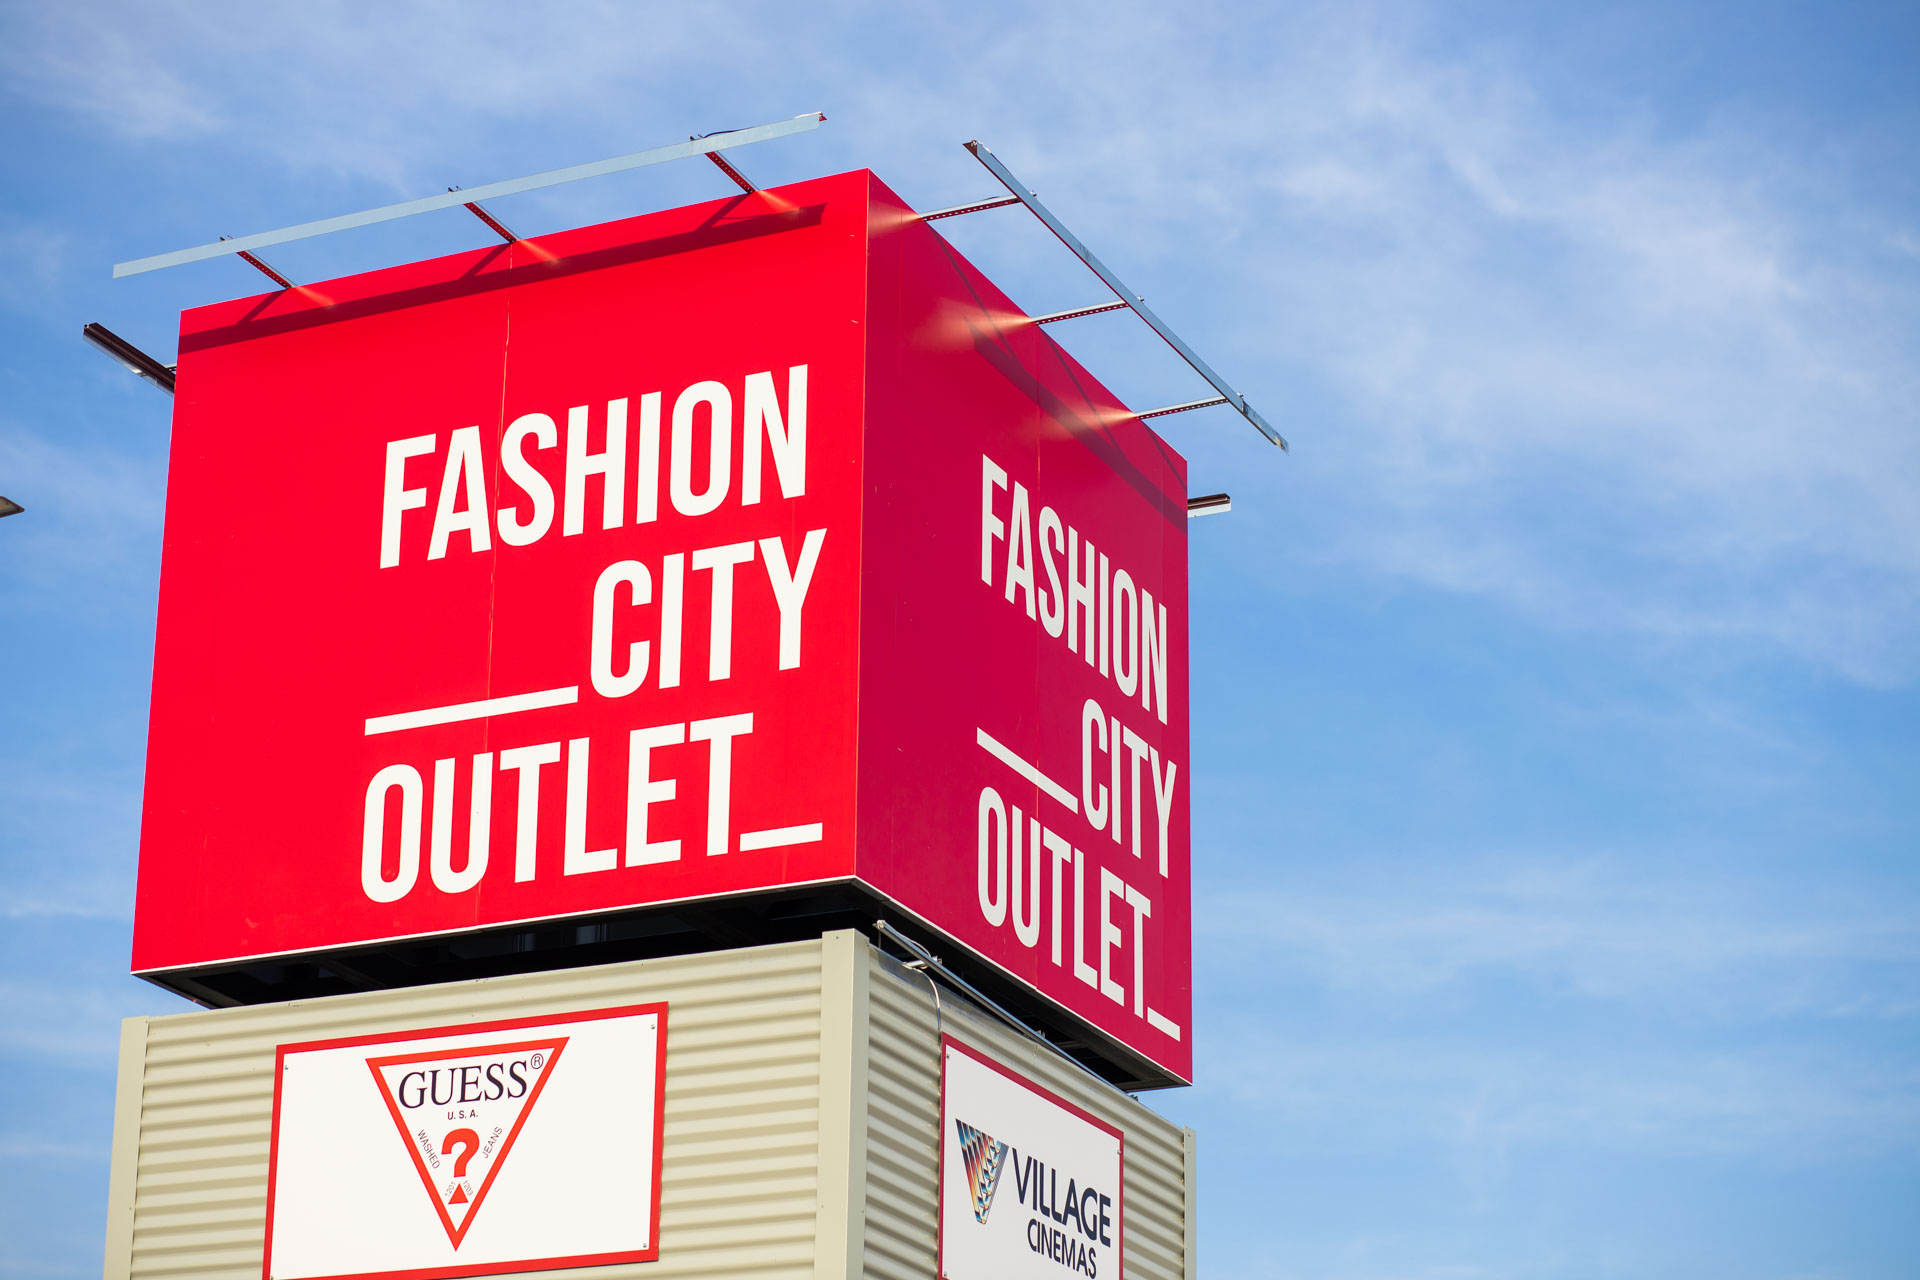 Το Fashion City Outlet αποθεώνει τις χειμερινές εκπτώσεις με απίστευτα χαμηλές τιμές έως -80%